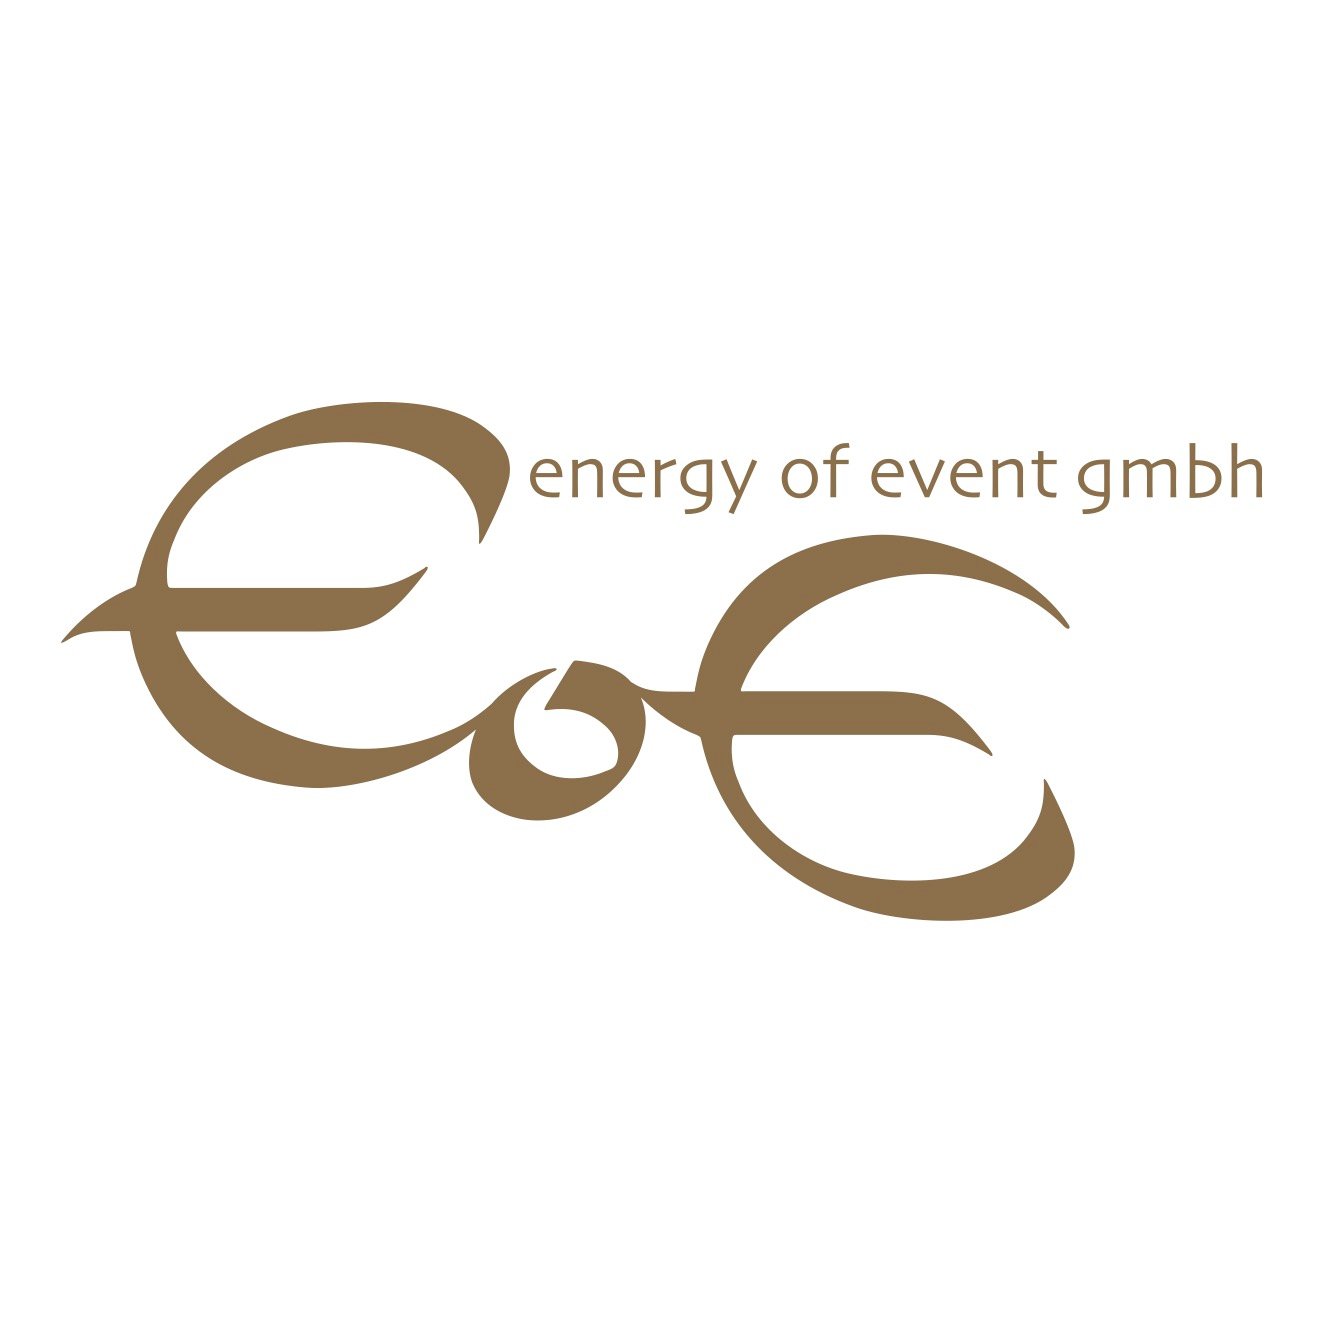 eoe_logo_GMBH